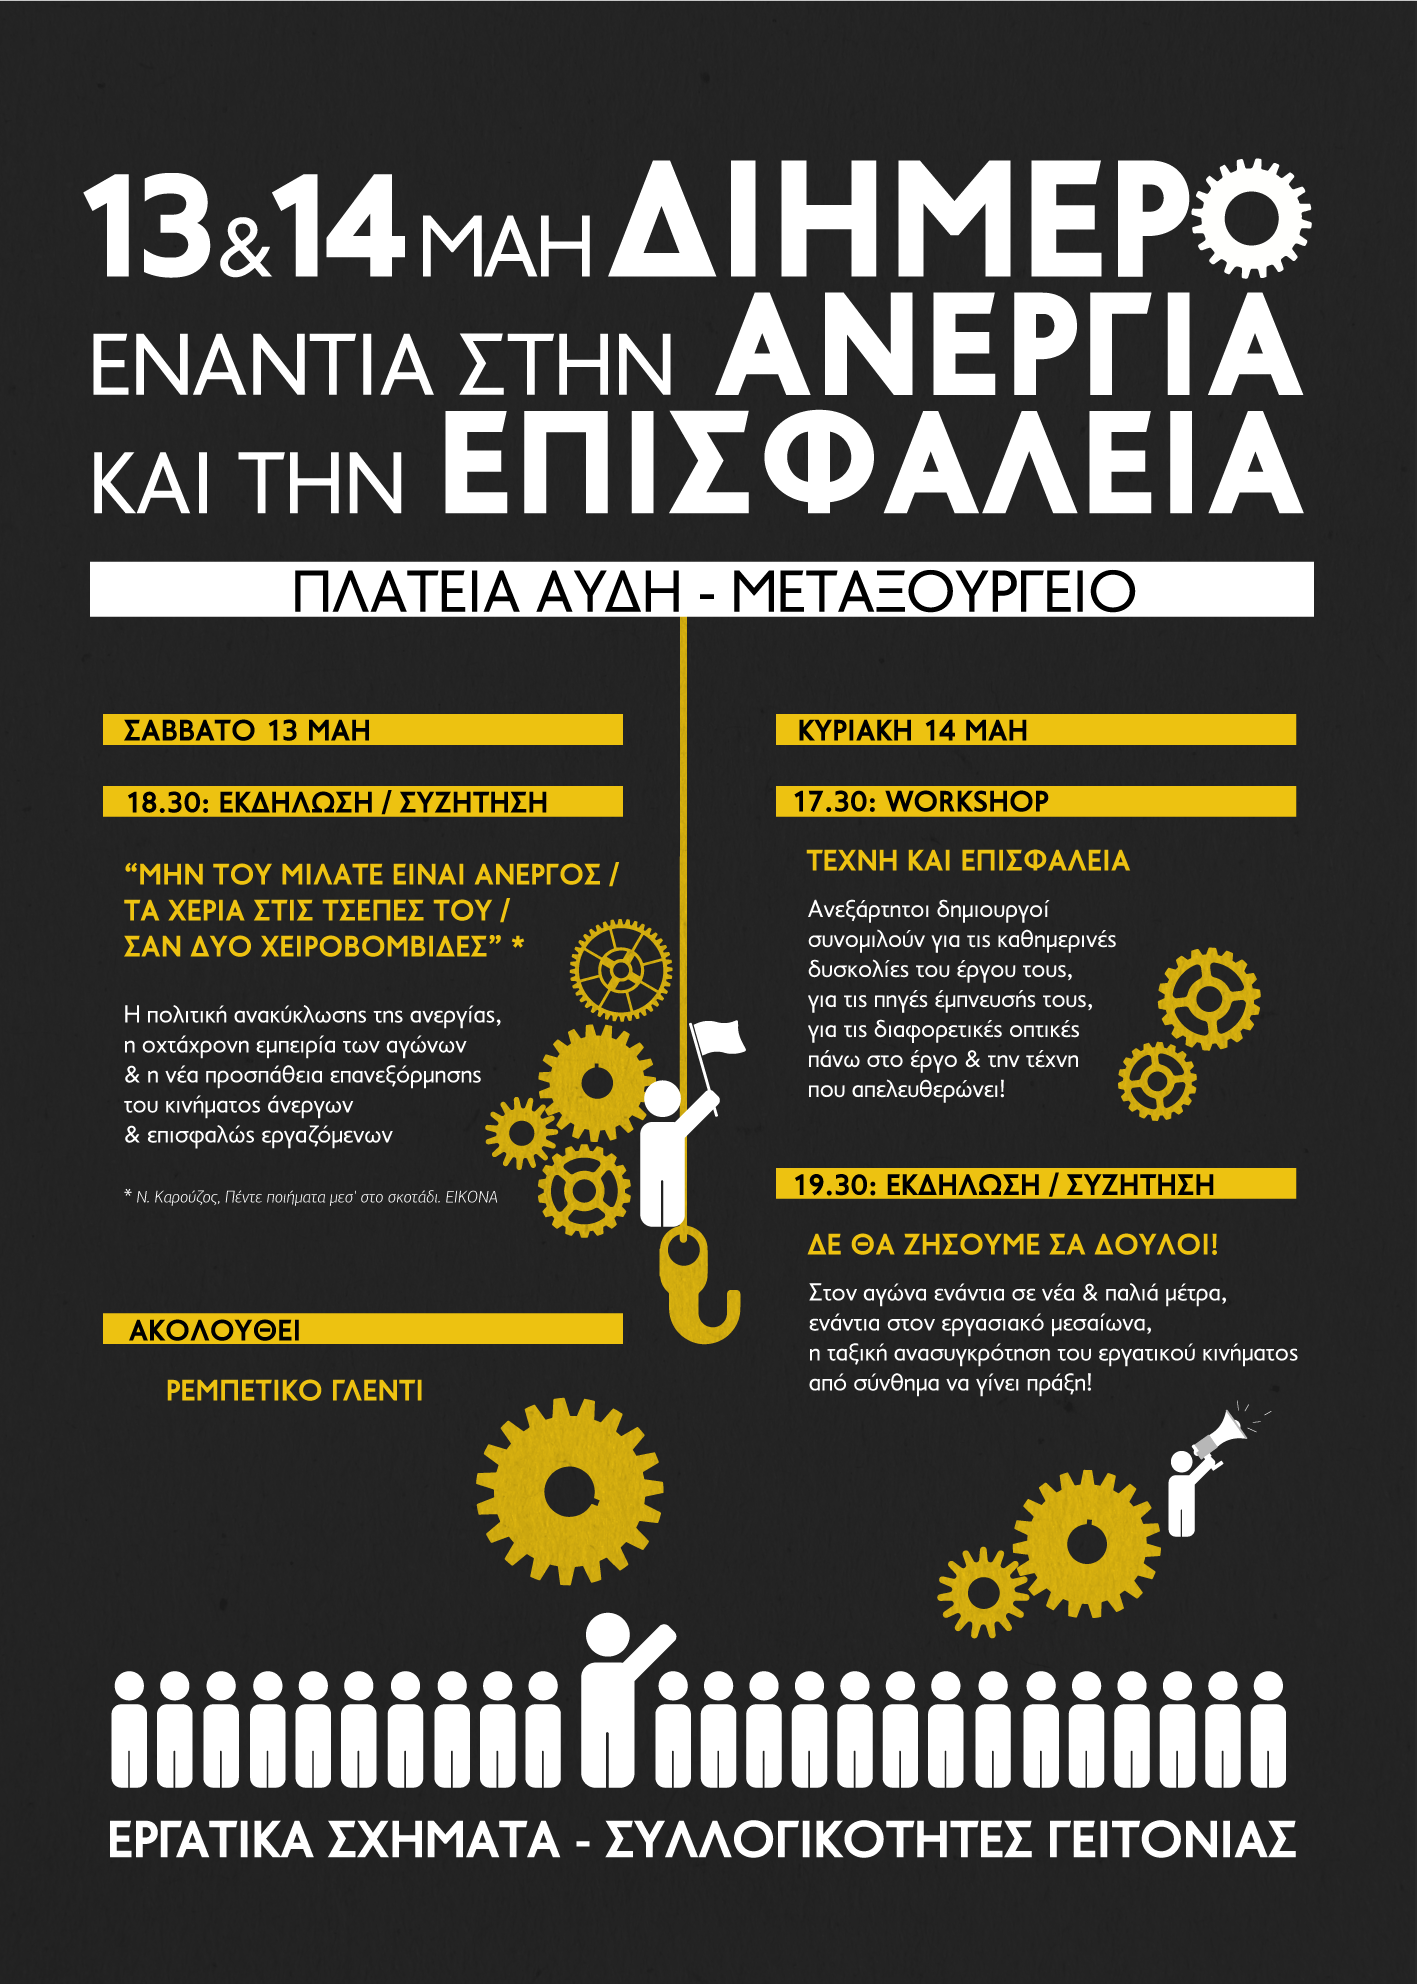 Αθήνα: Ενημέρωση από το Διήμερο, ενάντια σε ανεργία και επισφάλεια